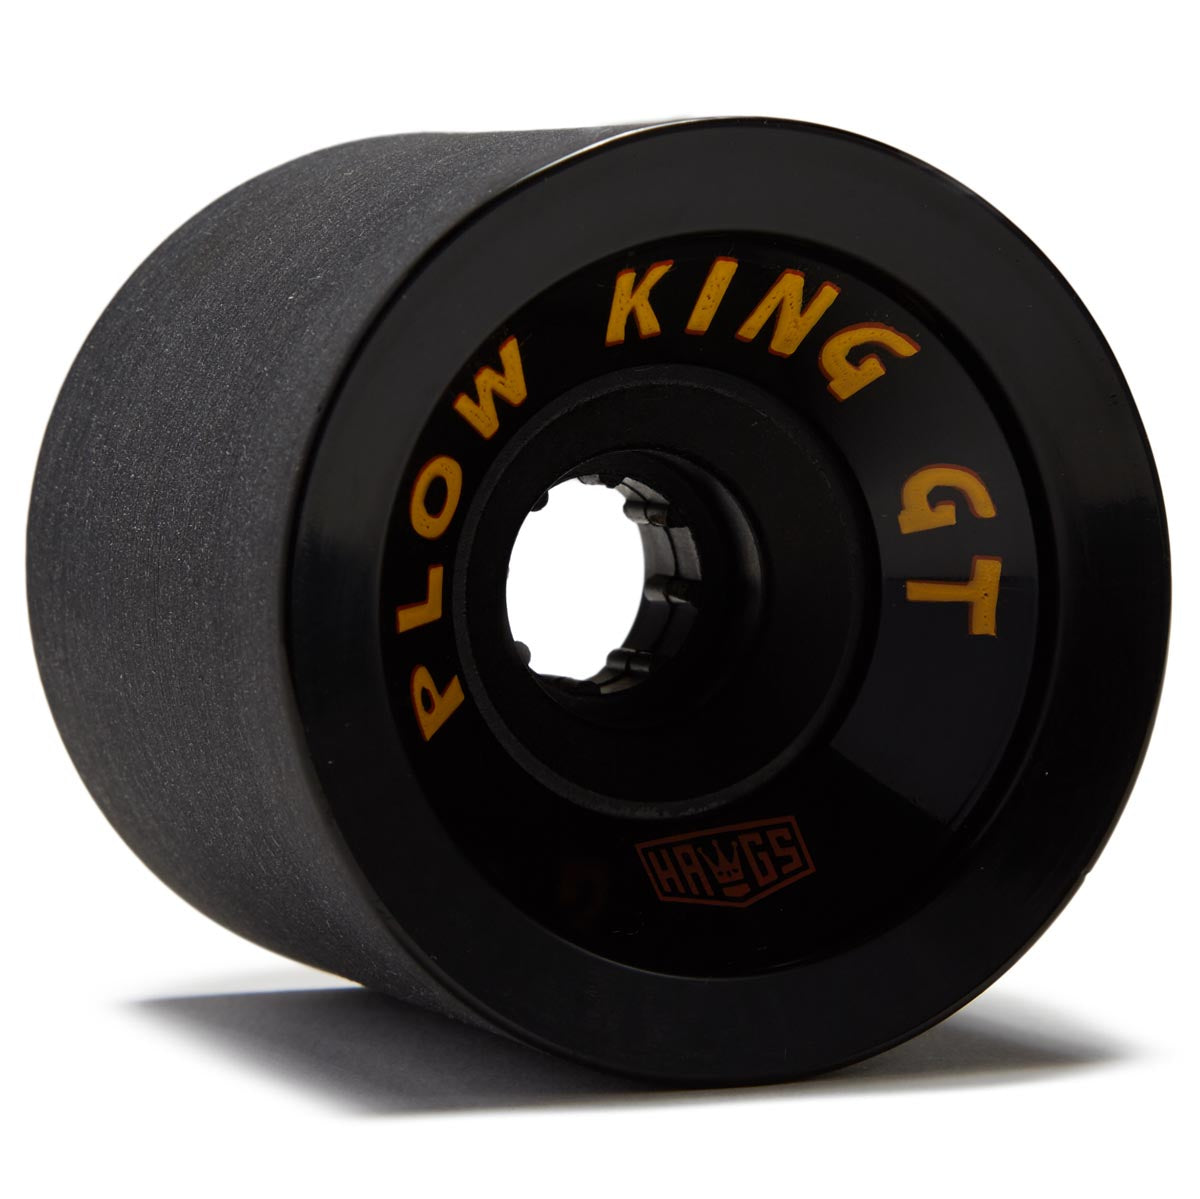 Hawgs Plow King 78a Longboard Wheels - Black - 72mm image 1